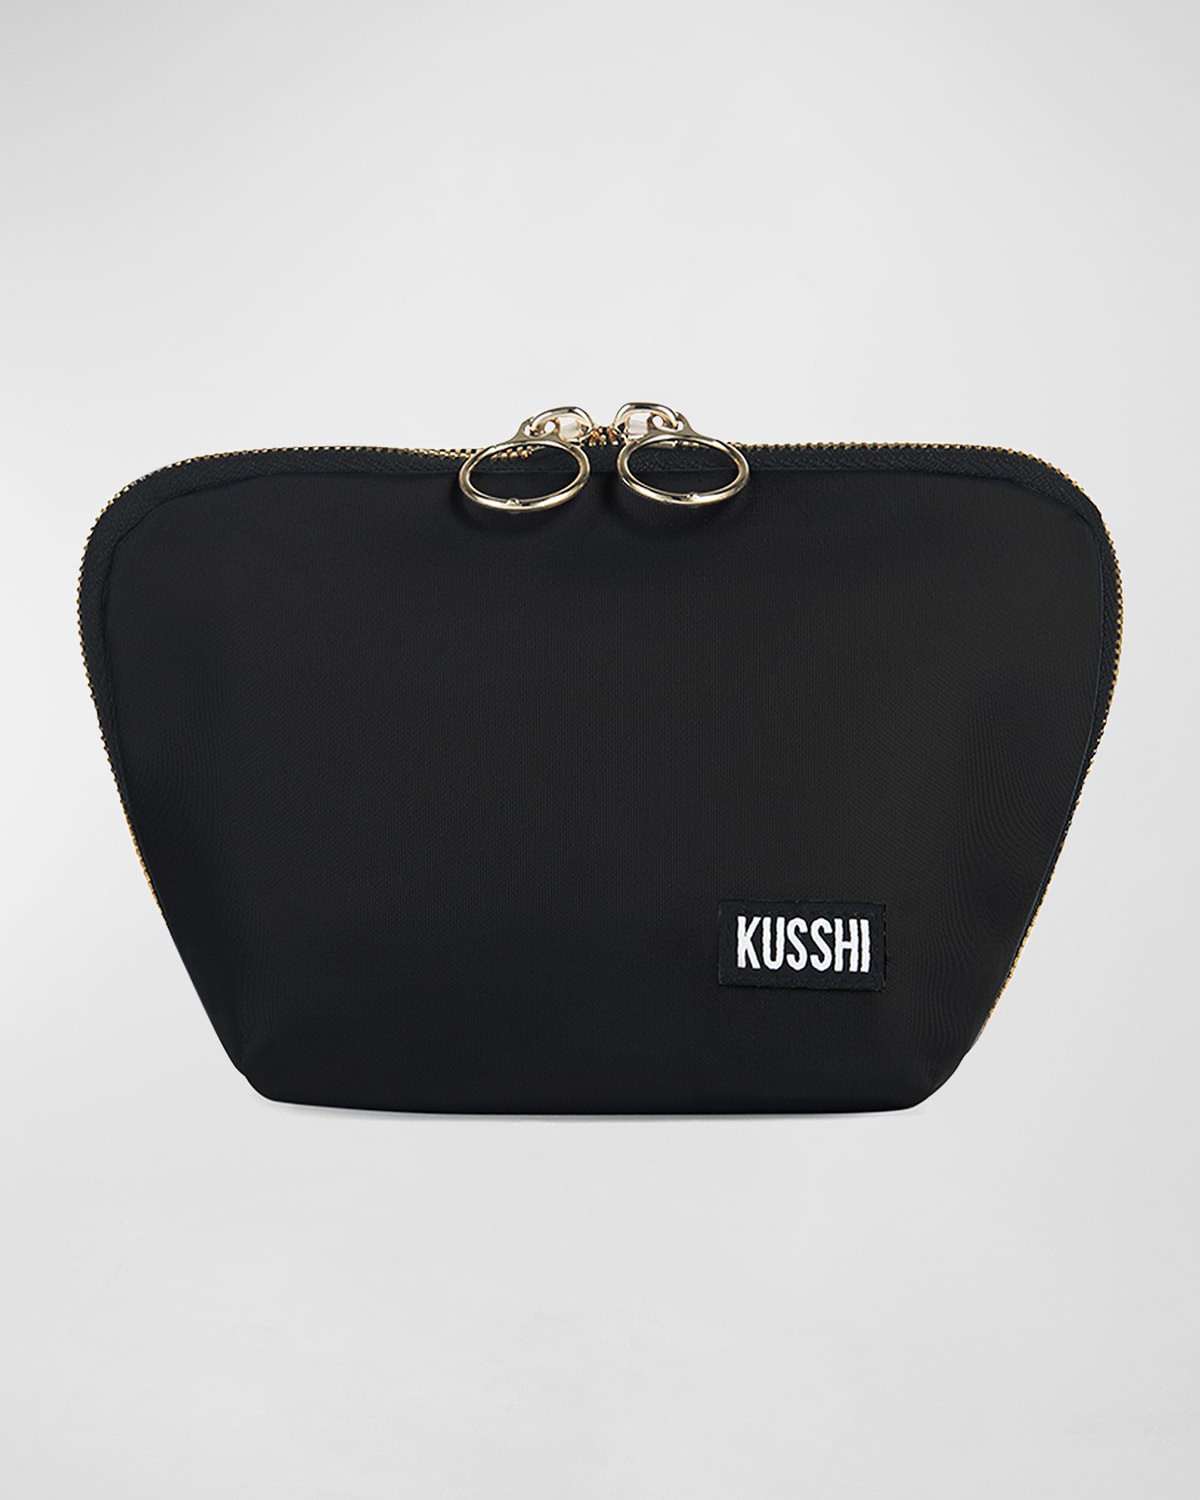 Kusshi Everyday Makeup Bag In Blk/coolgreynylon